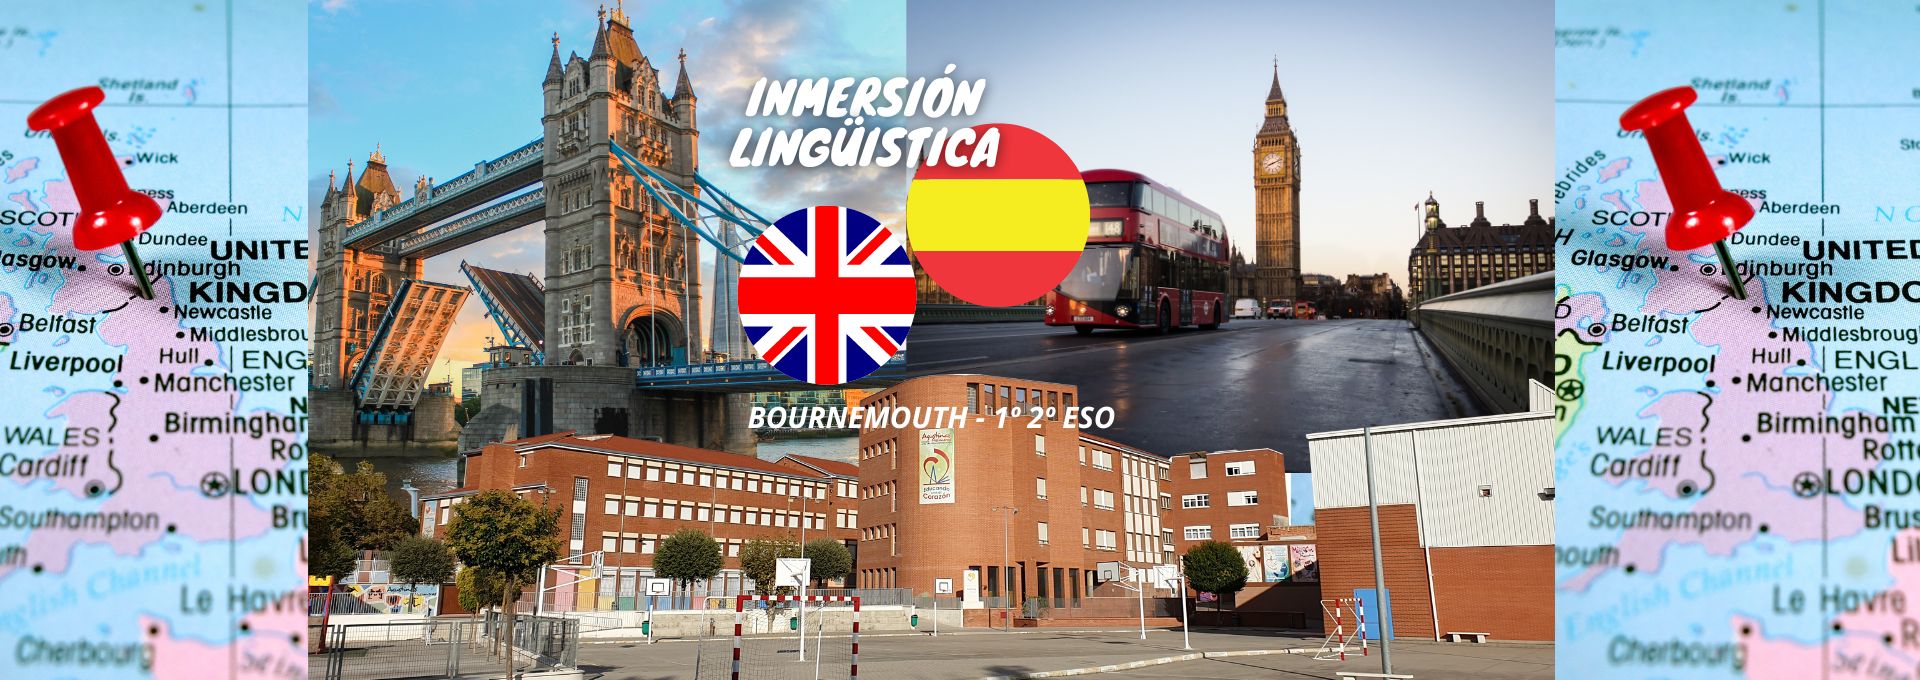 Inmersión Lingüística en Bournemouth | 1º y 2º ESO